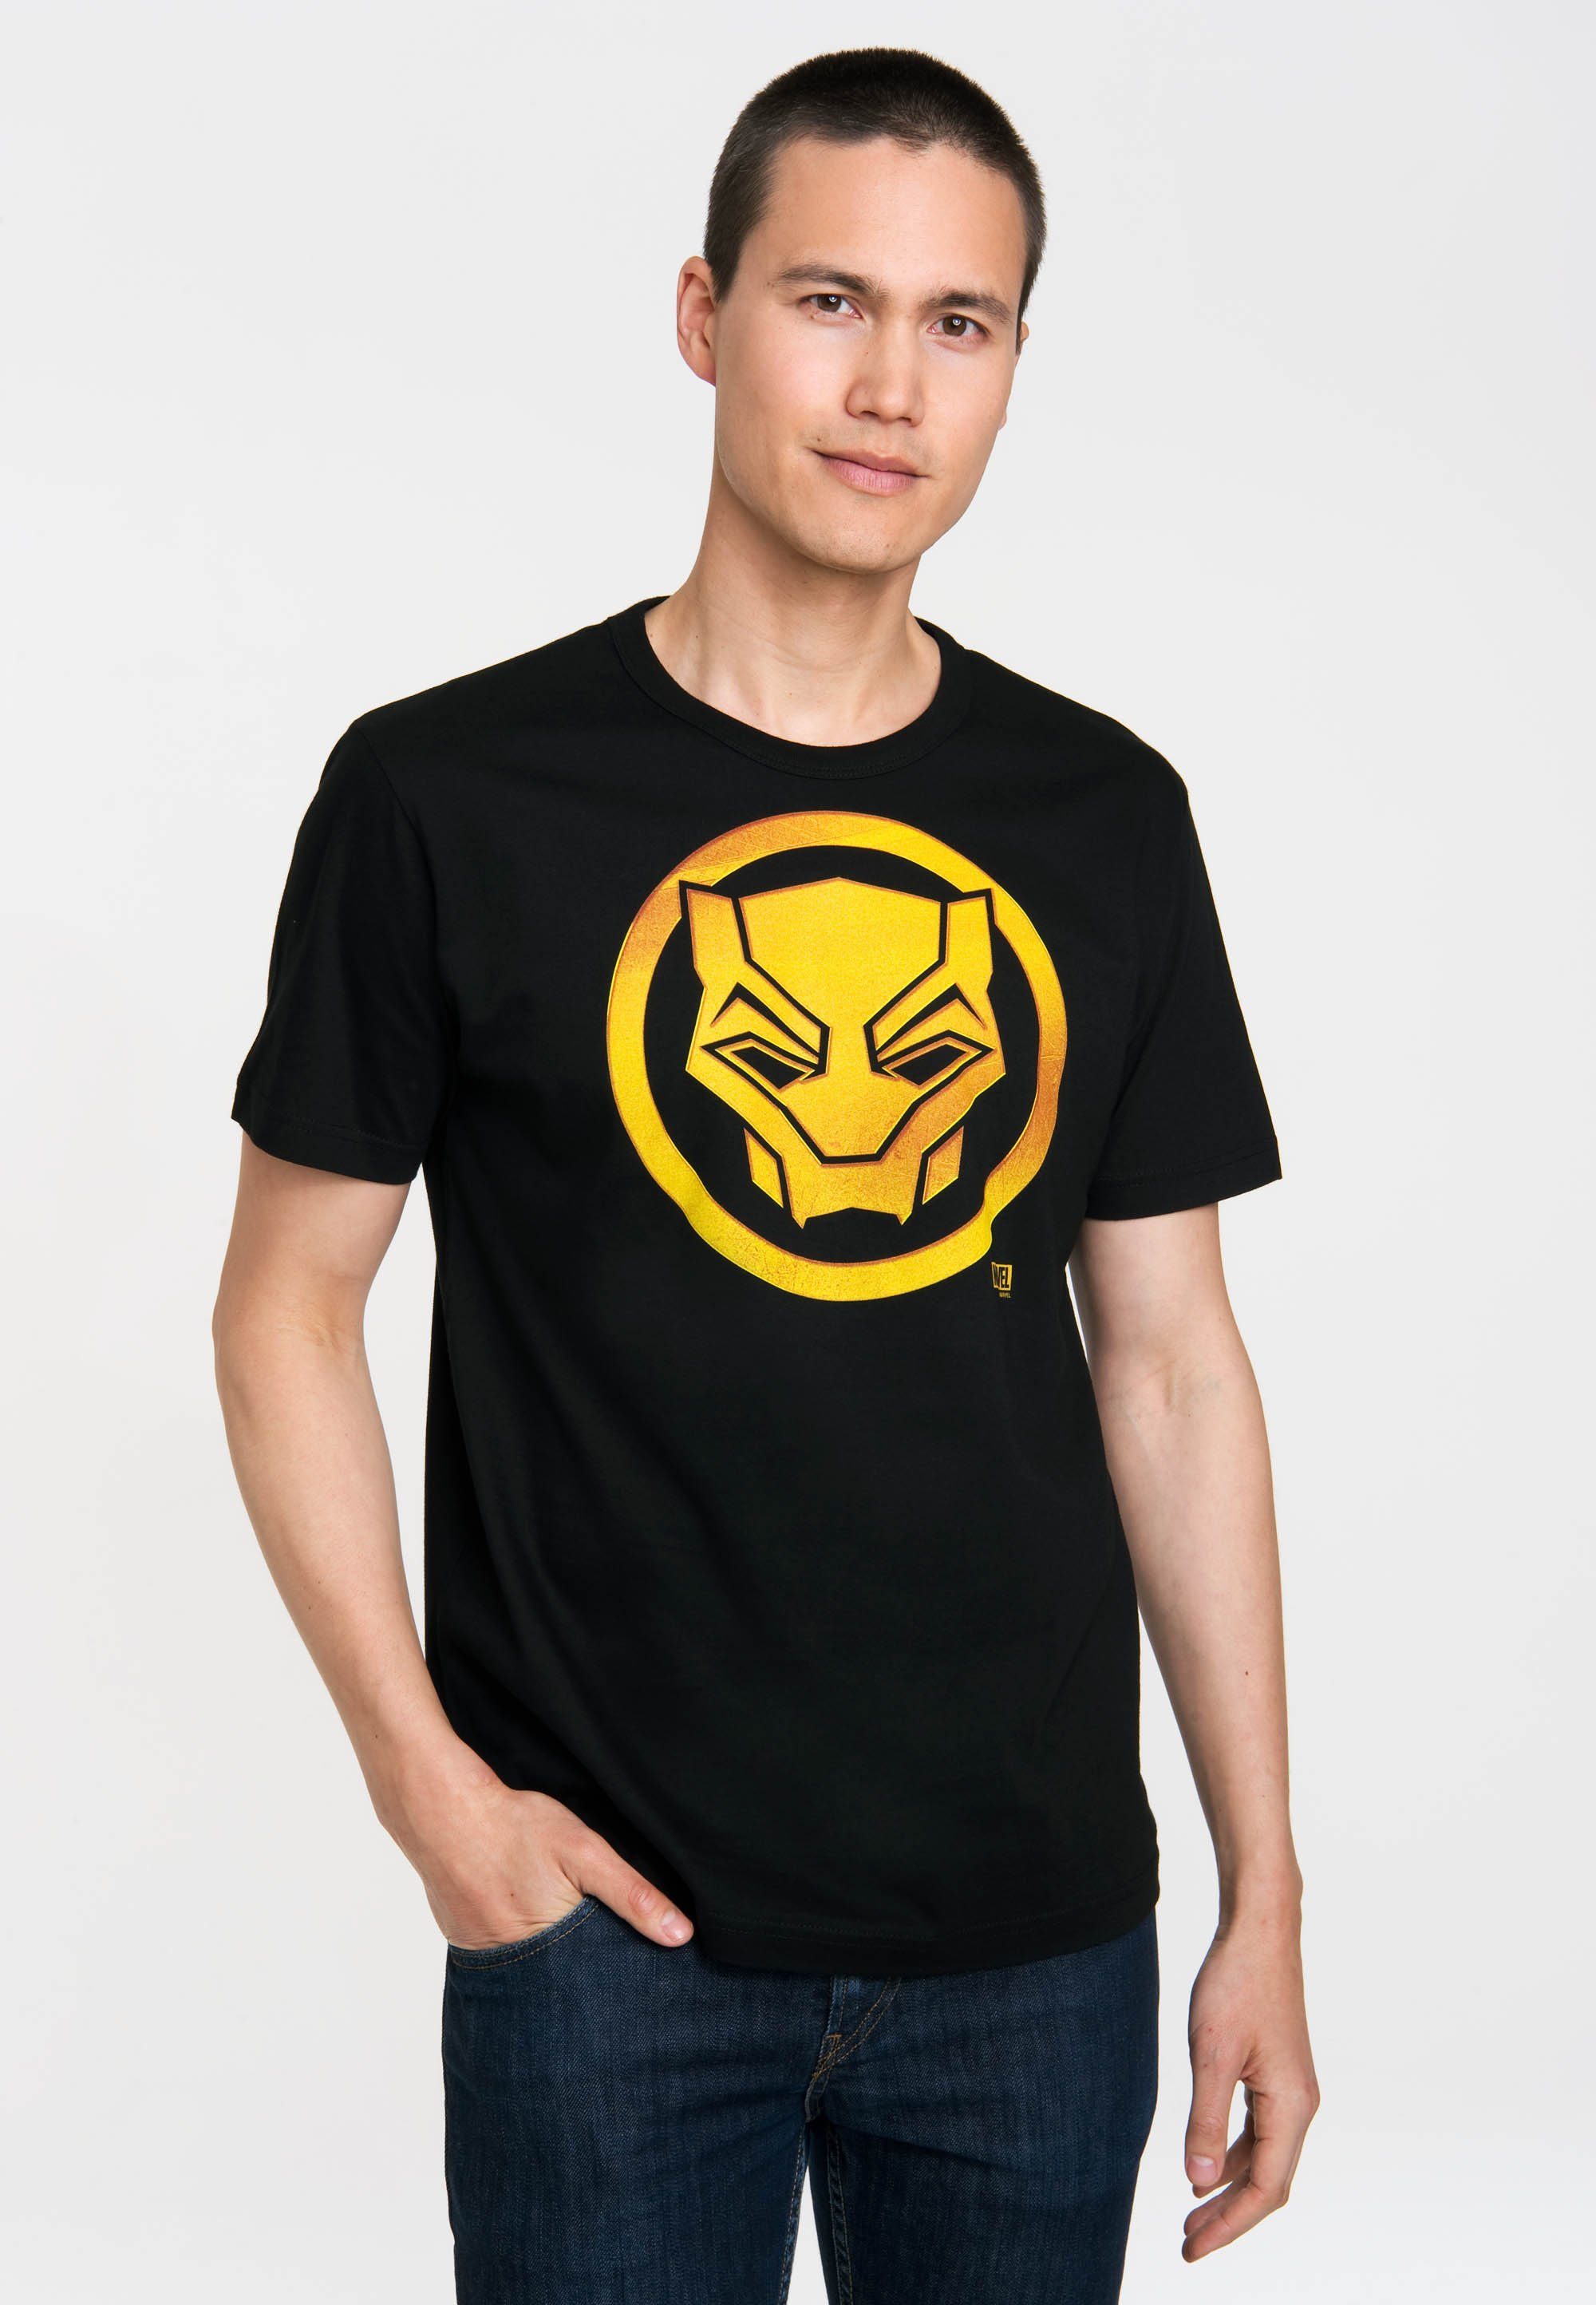 Black Panther LOGOSHIRT Black T-Shirt mit Marvel Logo - Panther-Logo